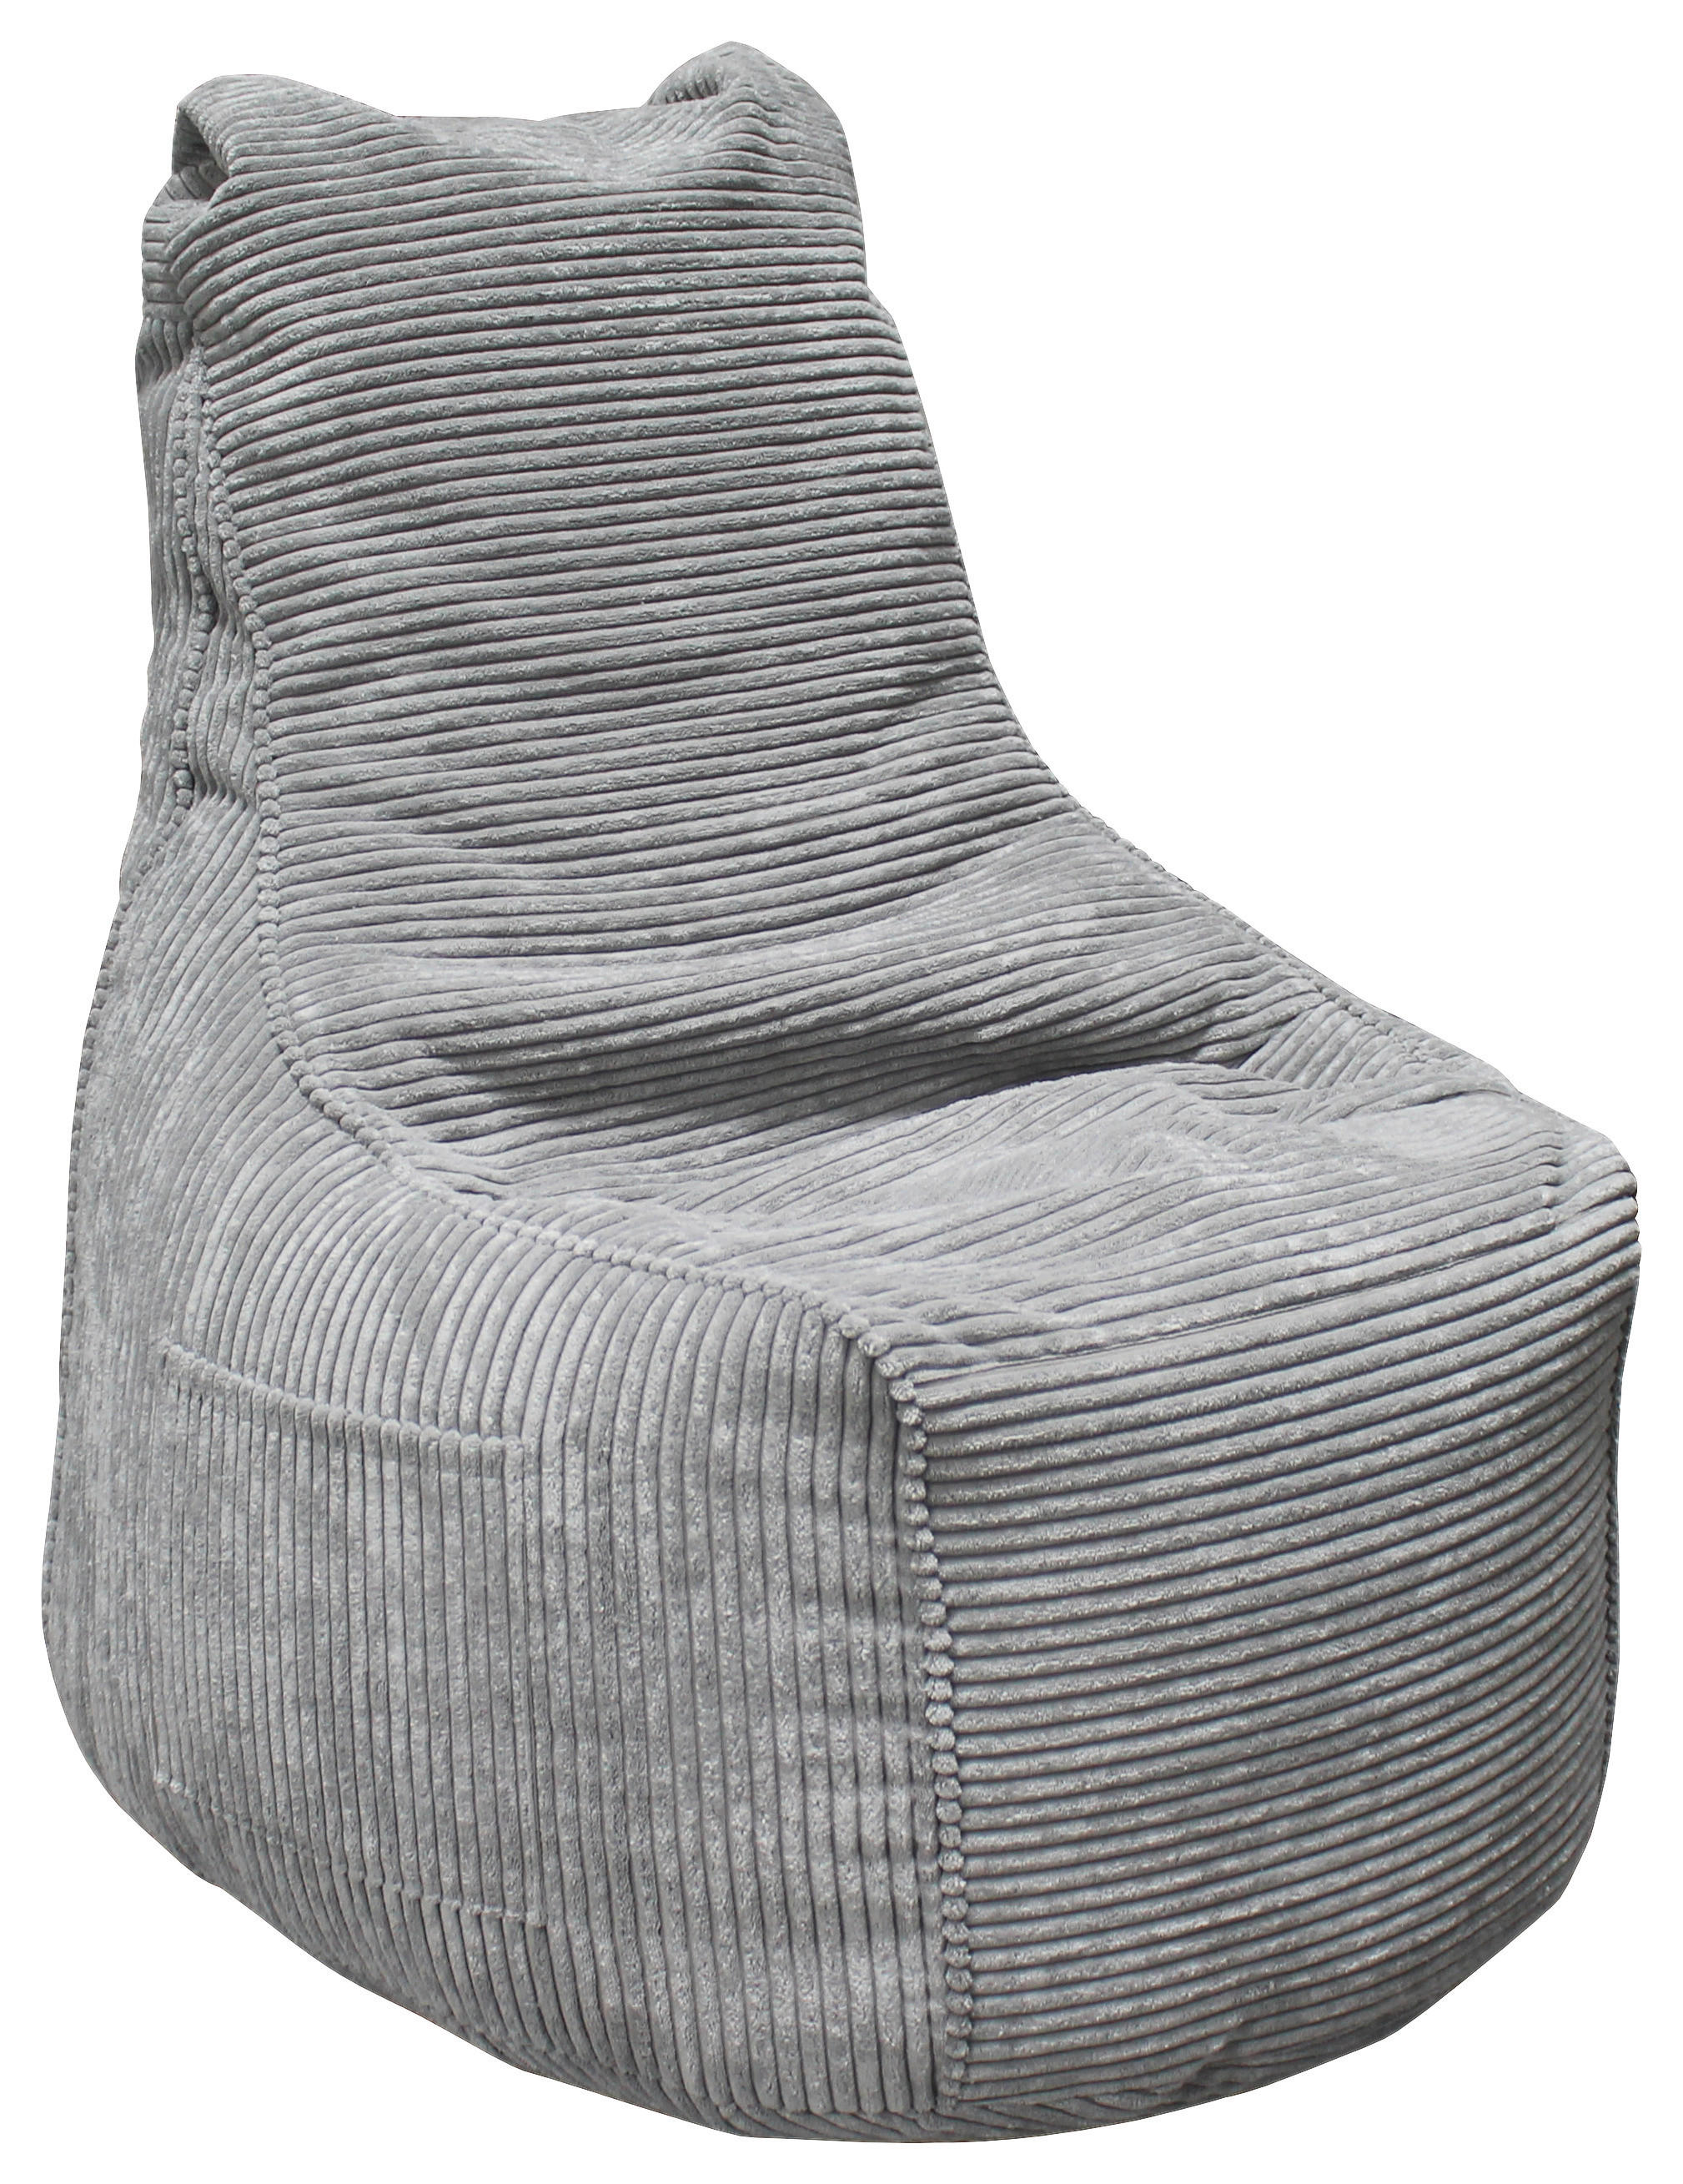 SITZSACK 270 l  - Grau, Design, Textil (85/100/85cm) - Carryhome